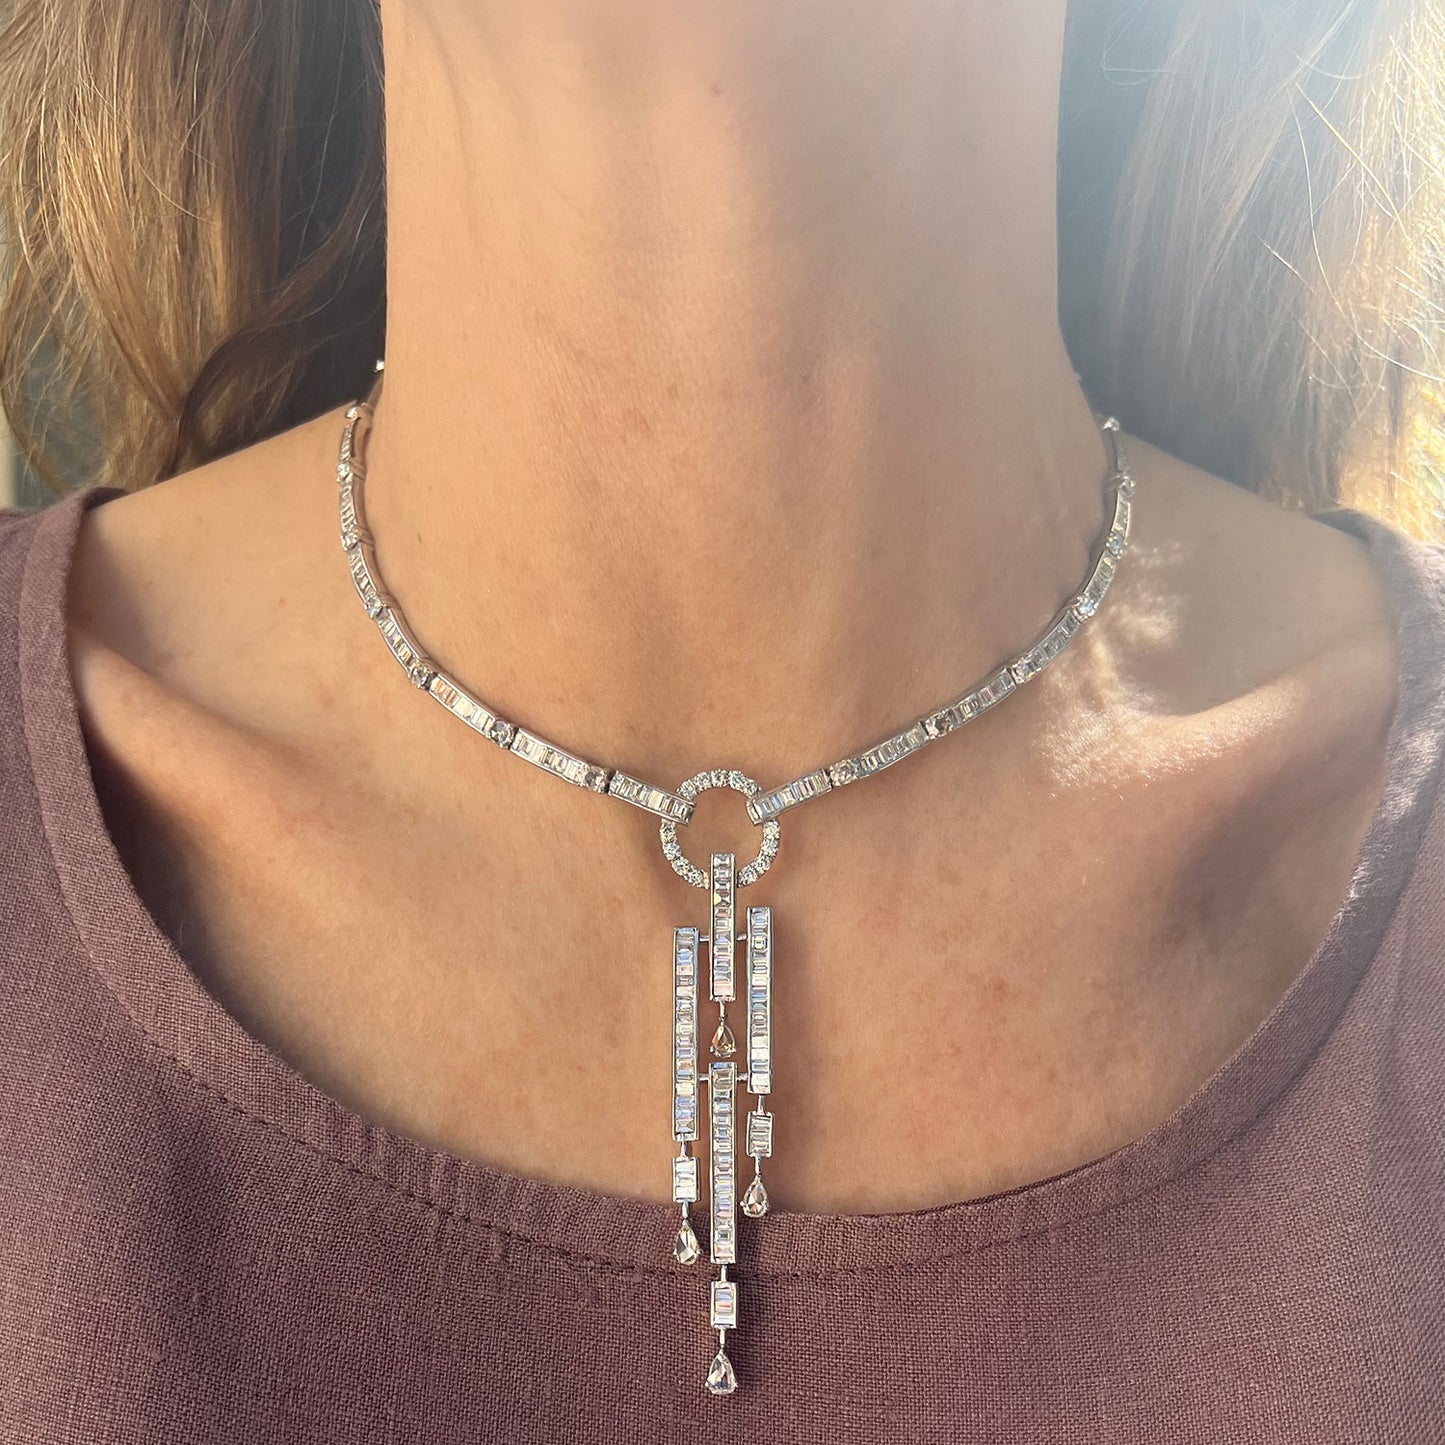 Estate Collection - Baguette & Rose-Cut Diamond 'Y' Necklace